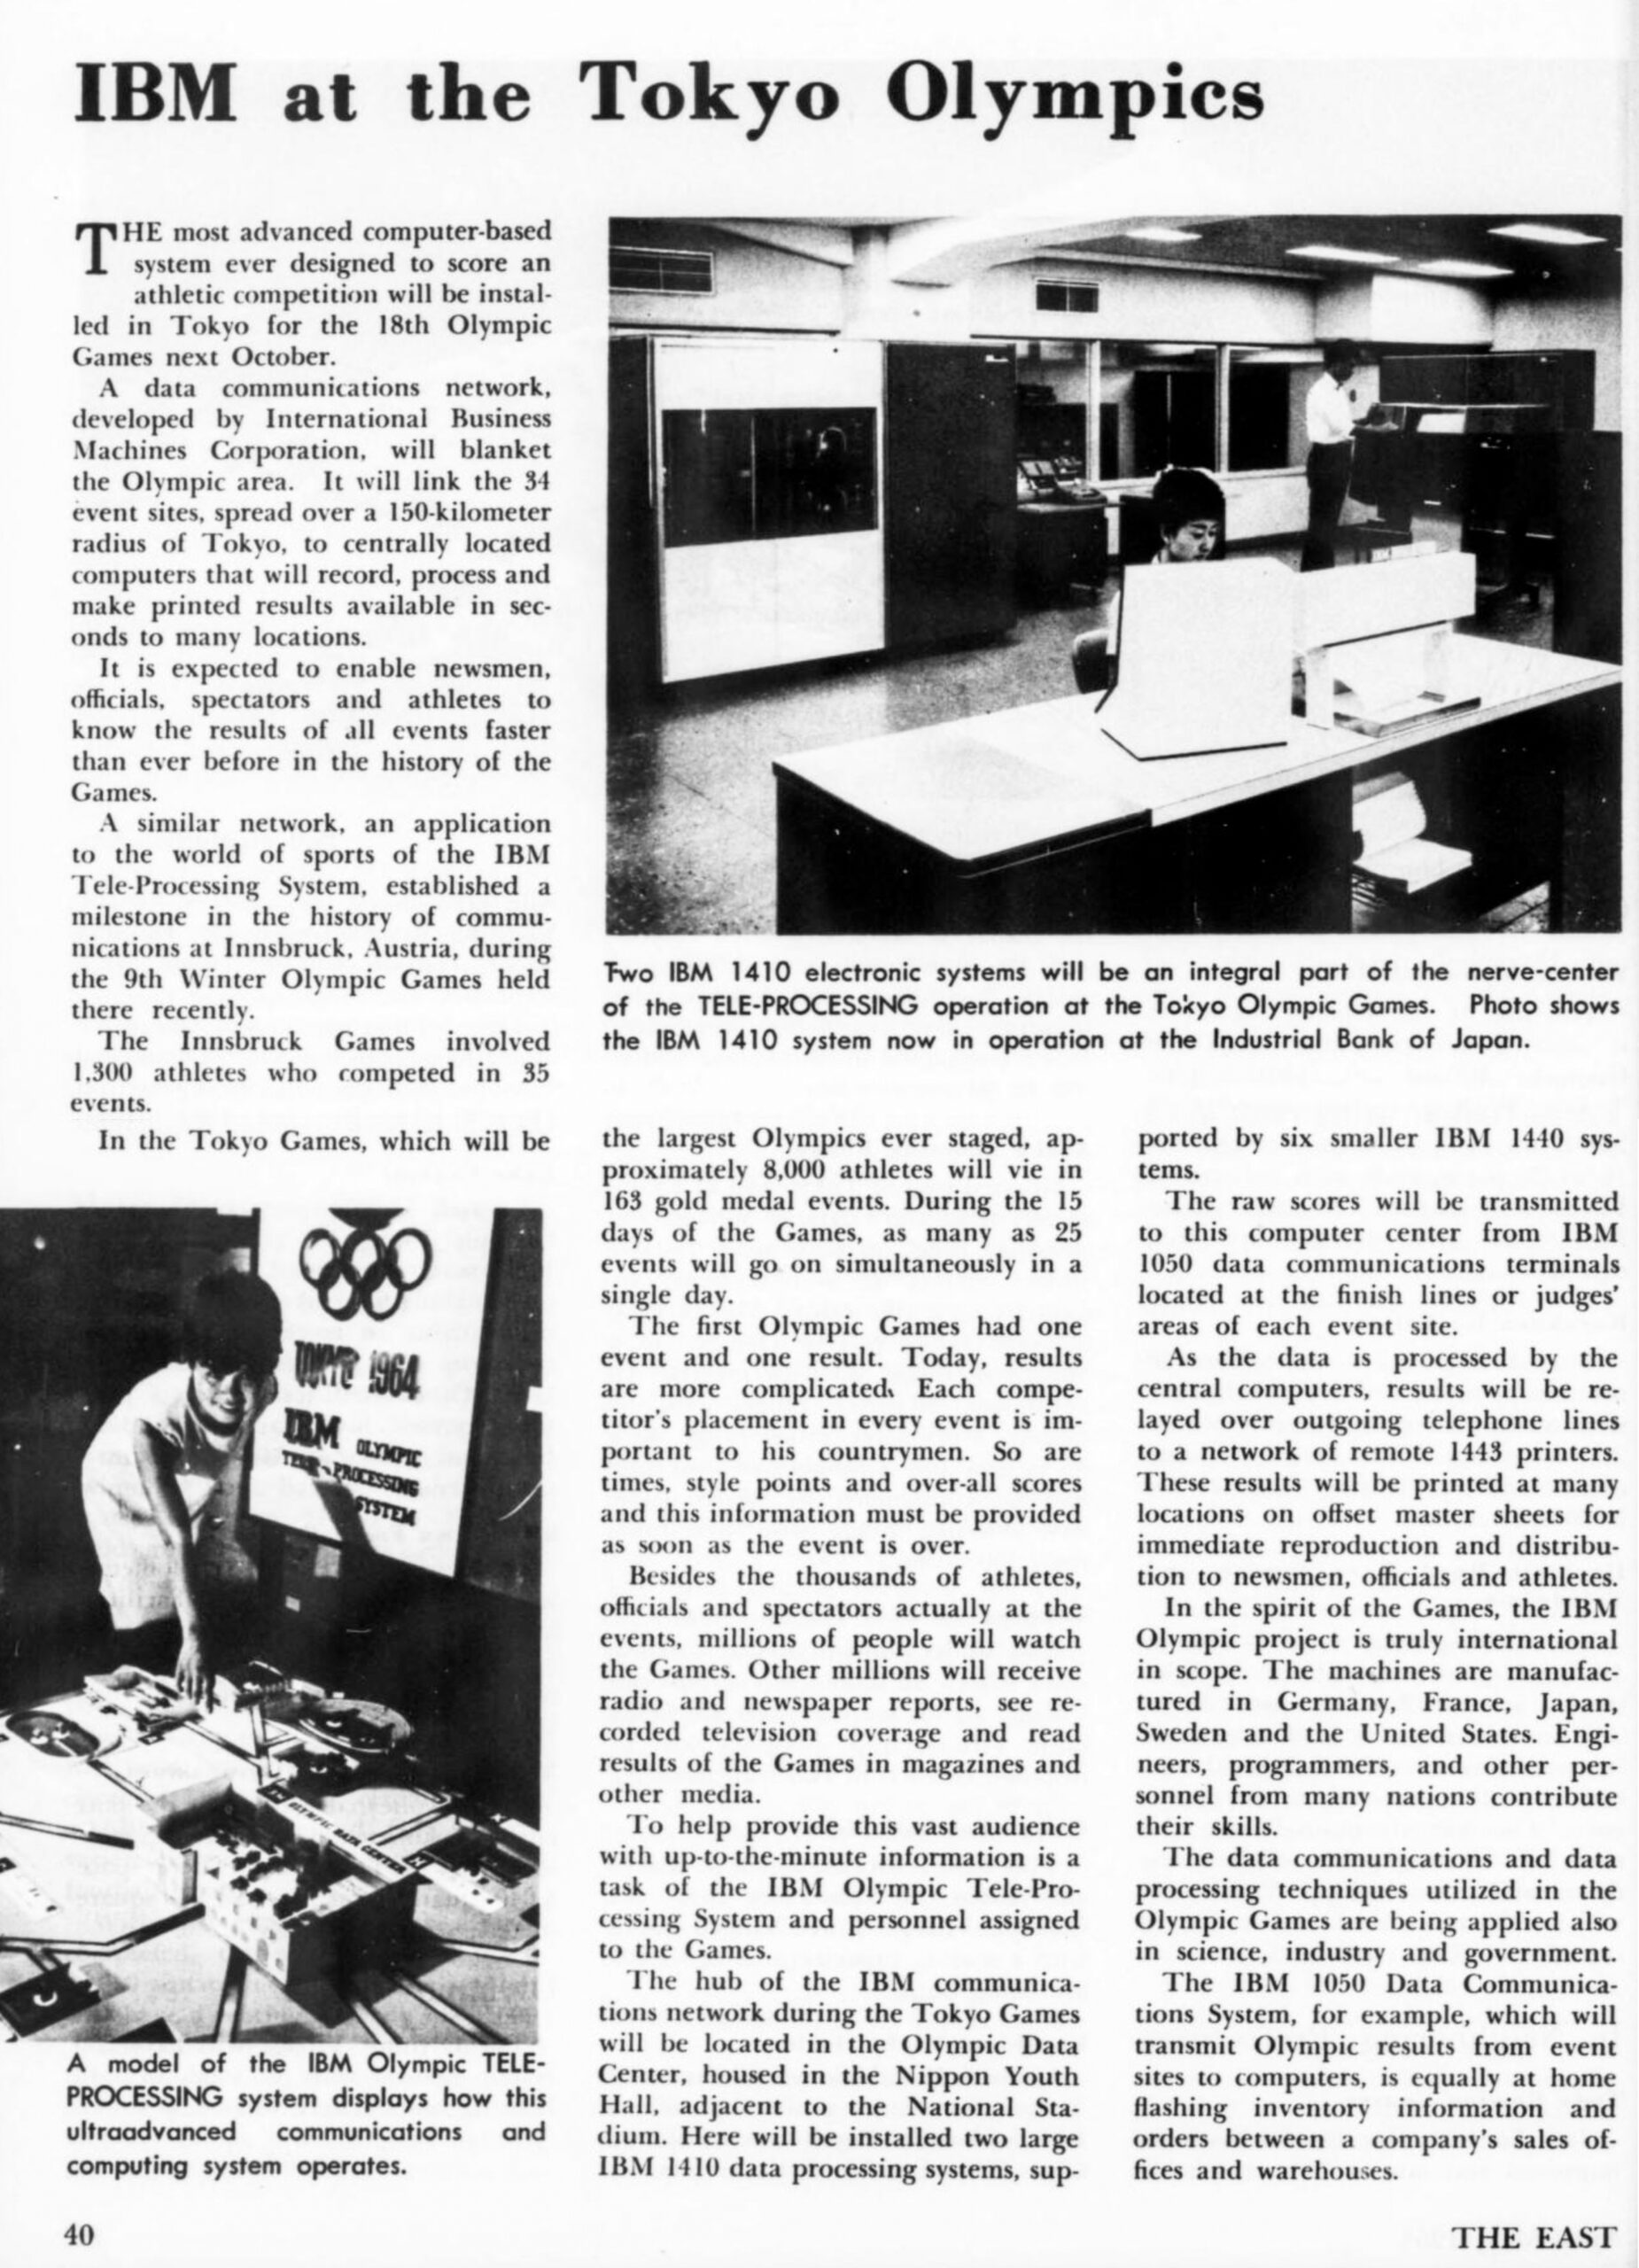 Journal The East April/May 1964: IBM at the Tokyo Olympics. Grâce au système mis en place par IBM les résultats de toutes les compétitions seront connus plus rapidement que jamais dans l’histoire de jeux olympiques.